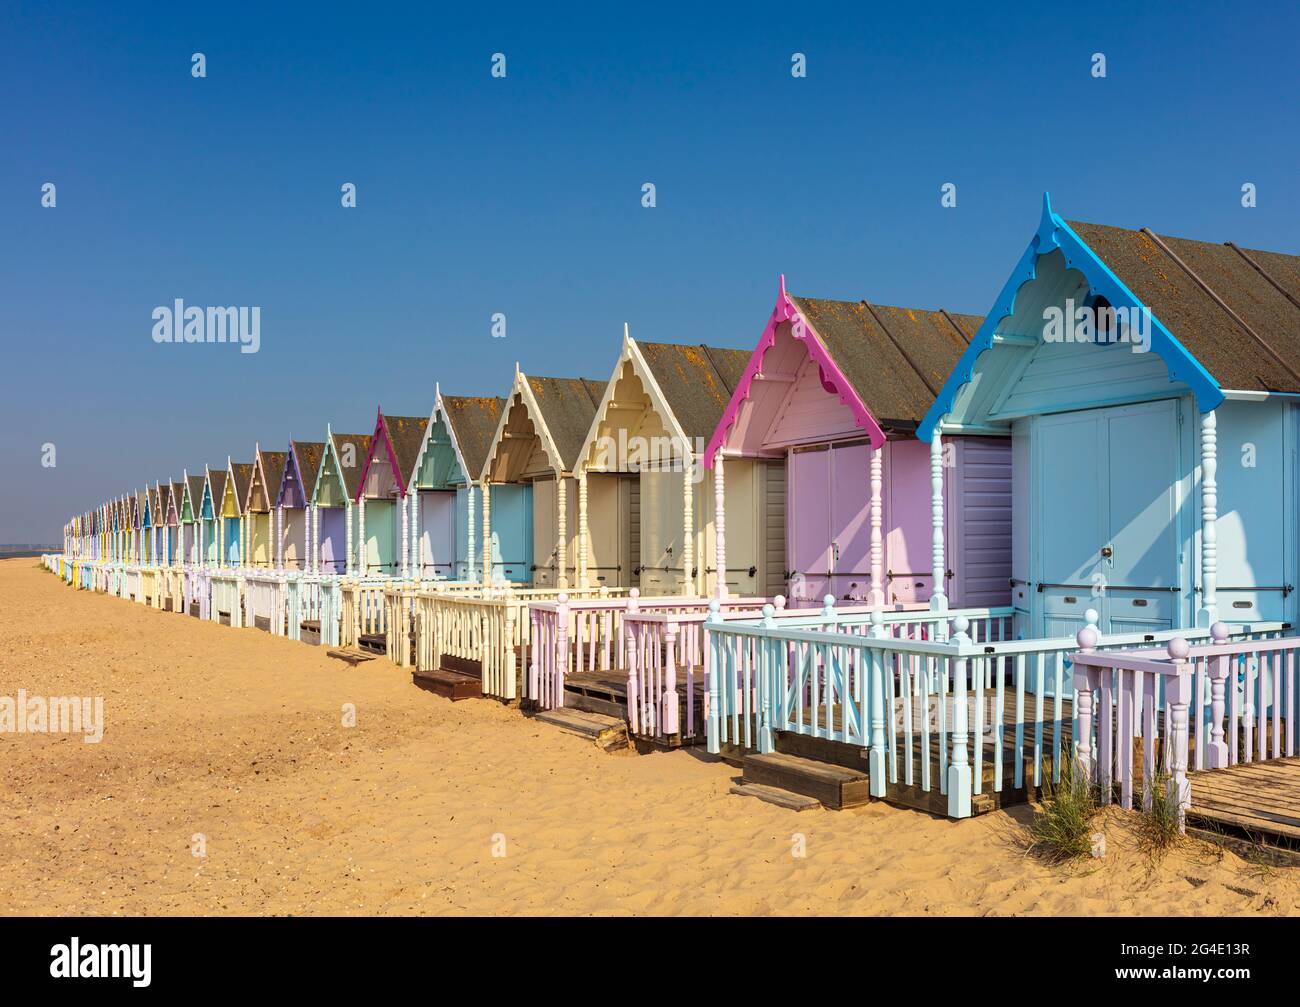 Cabañas de playa de colores pastel, Mersea Island, Essex, Reino Unido. Foto de stock